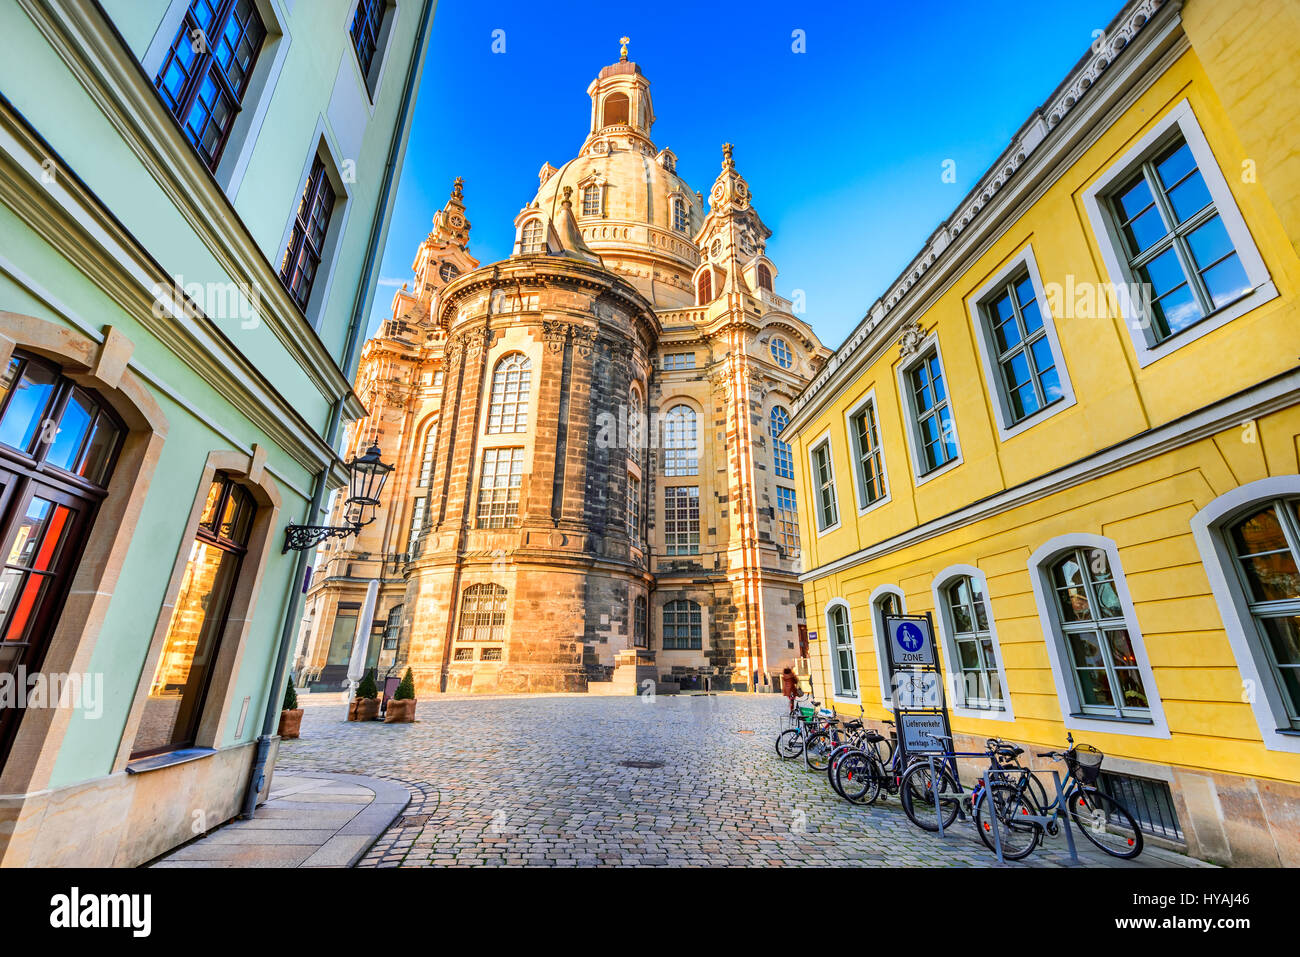 Dresden, Deutschland. Frauenkirche in der antiken Stadt Dresda, historisches und kulturelles Zentrum des Freistaates Sachsen in Europa. Stockfoto